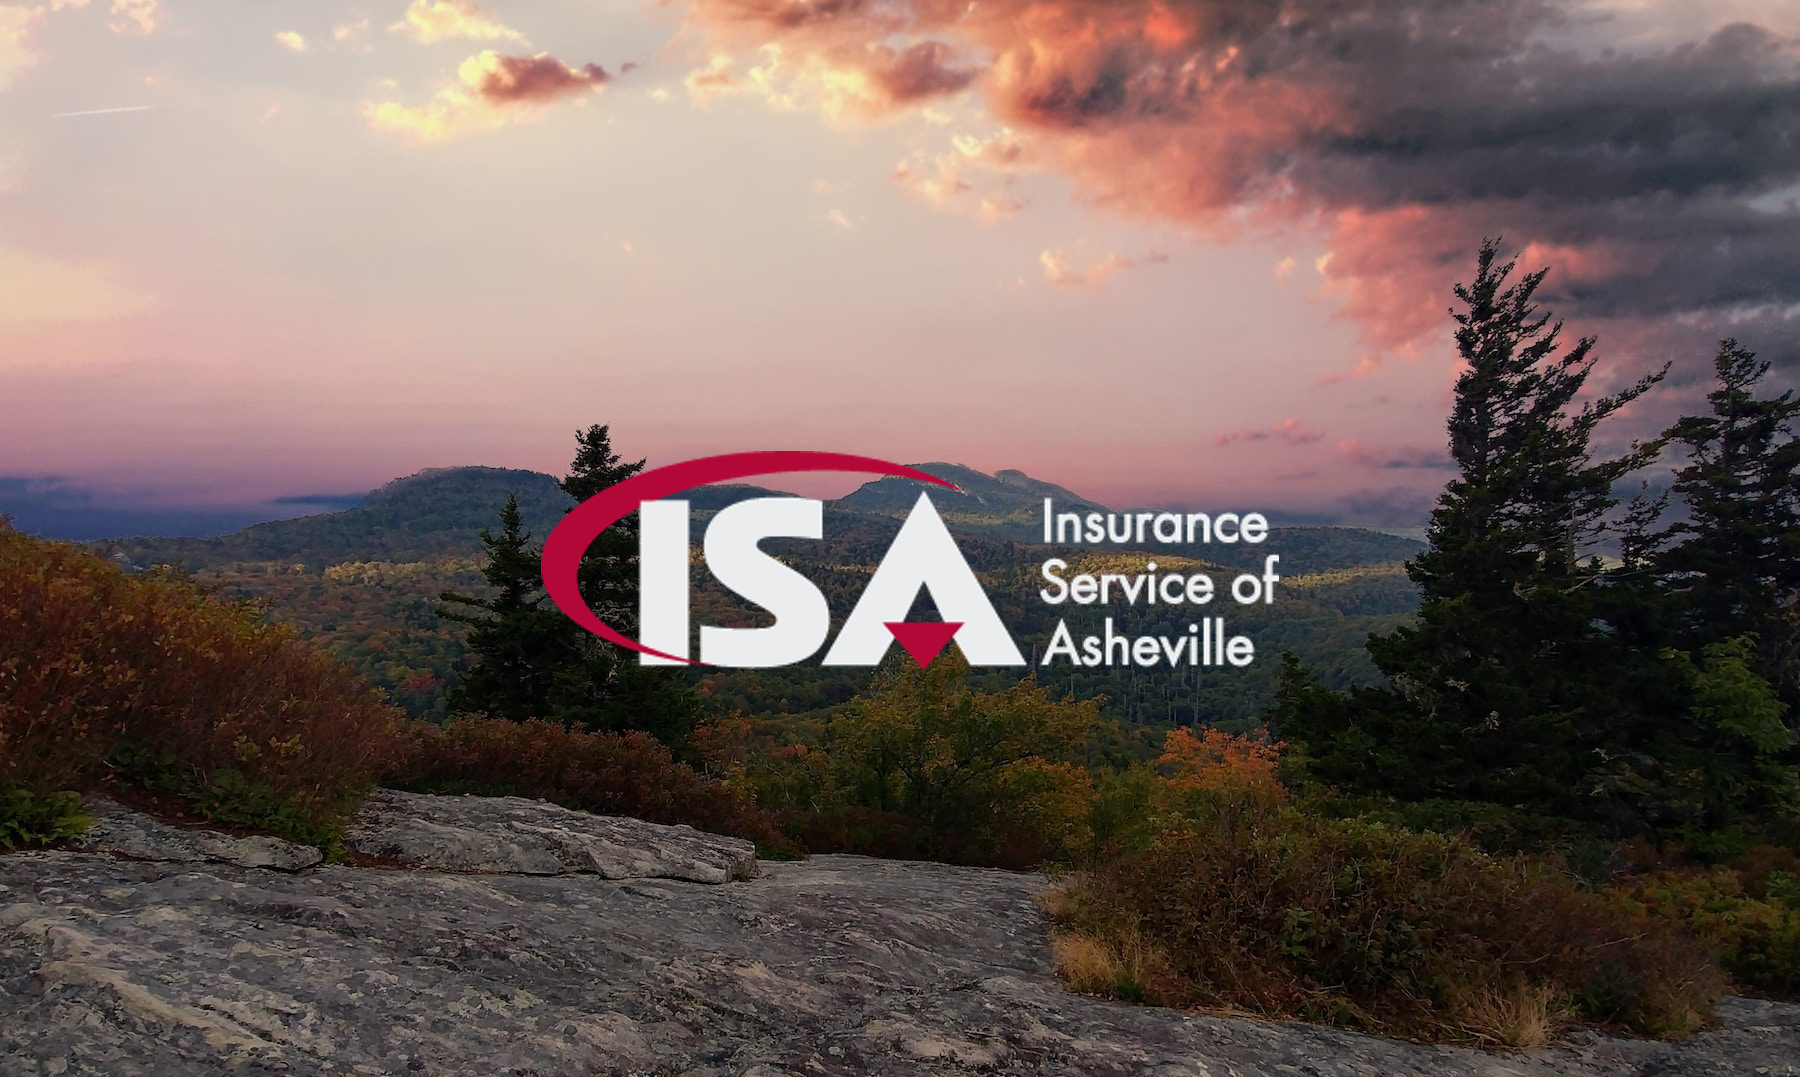 Insurance Service of Asheville